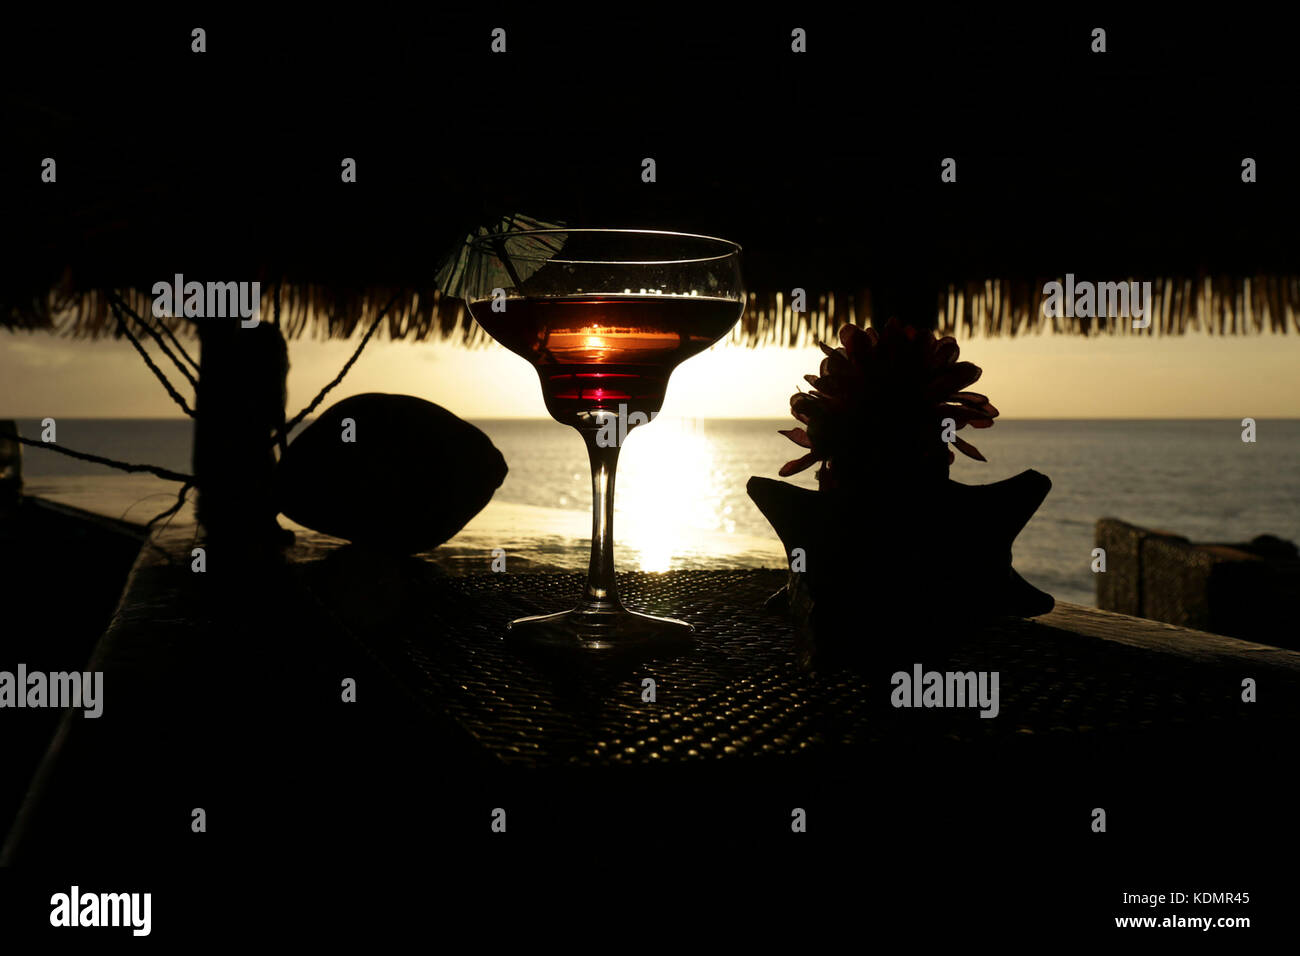 Cóctel con cristal en el fondo de la puesta de sol reflejada en el cristal. isla tropical. Foto de stock